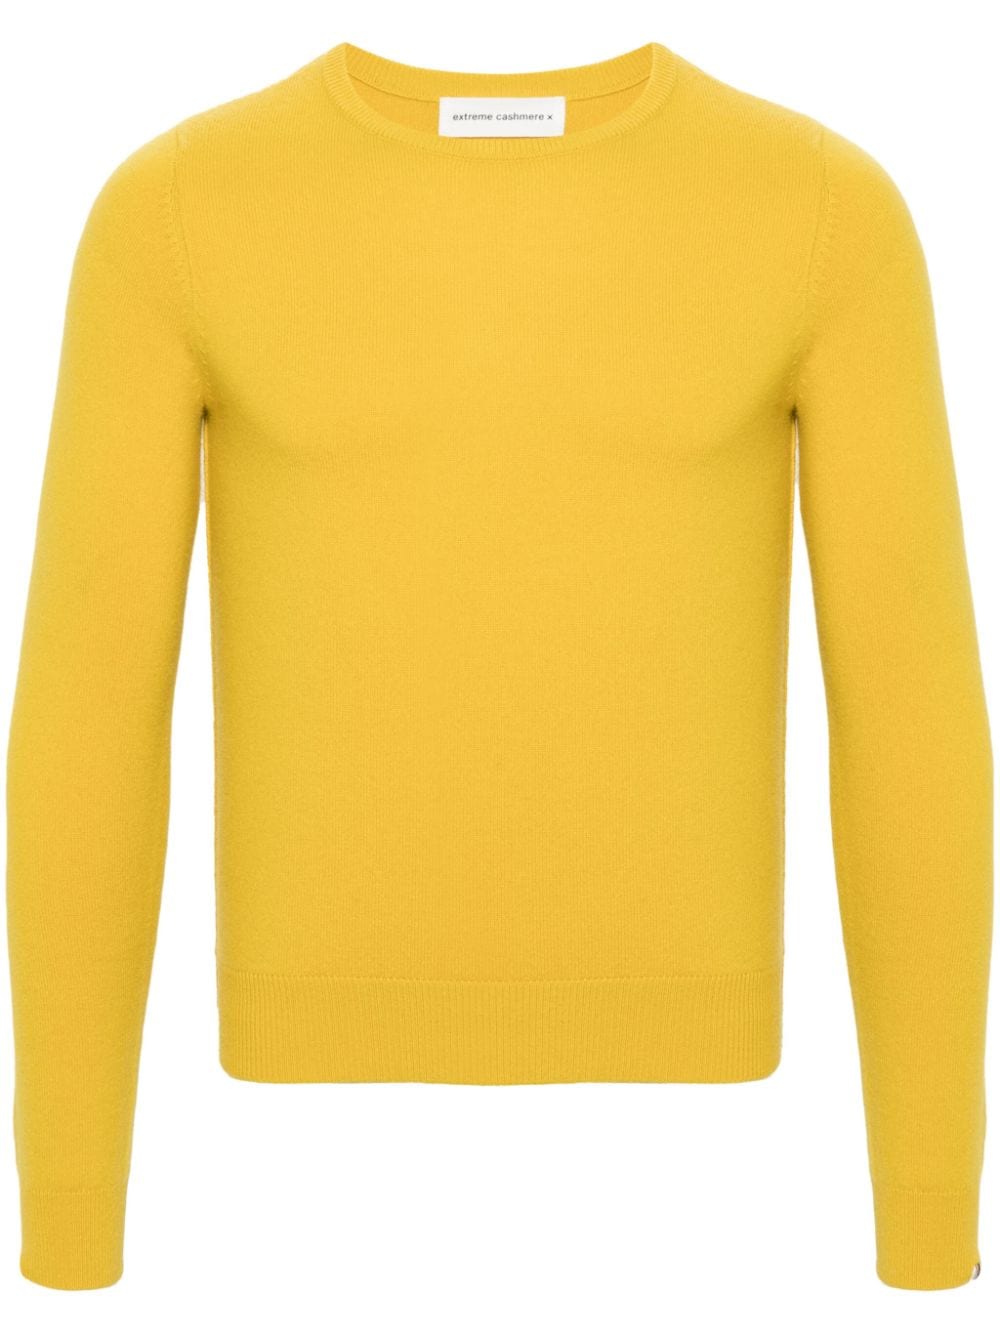 extreme cashmere Schmaler No 41 Pullover - Gelb von extreme cashmere